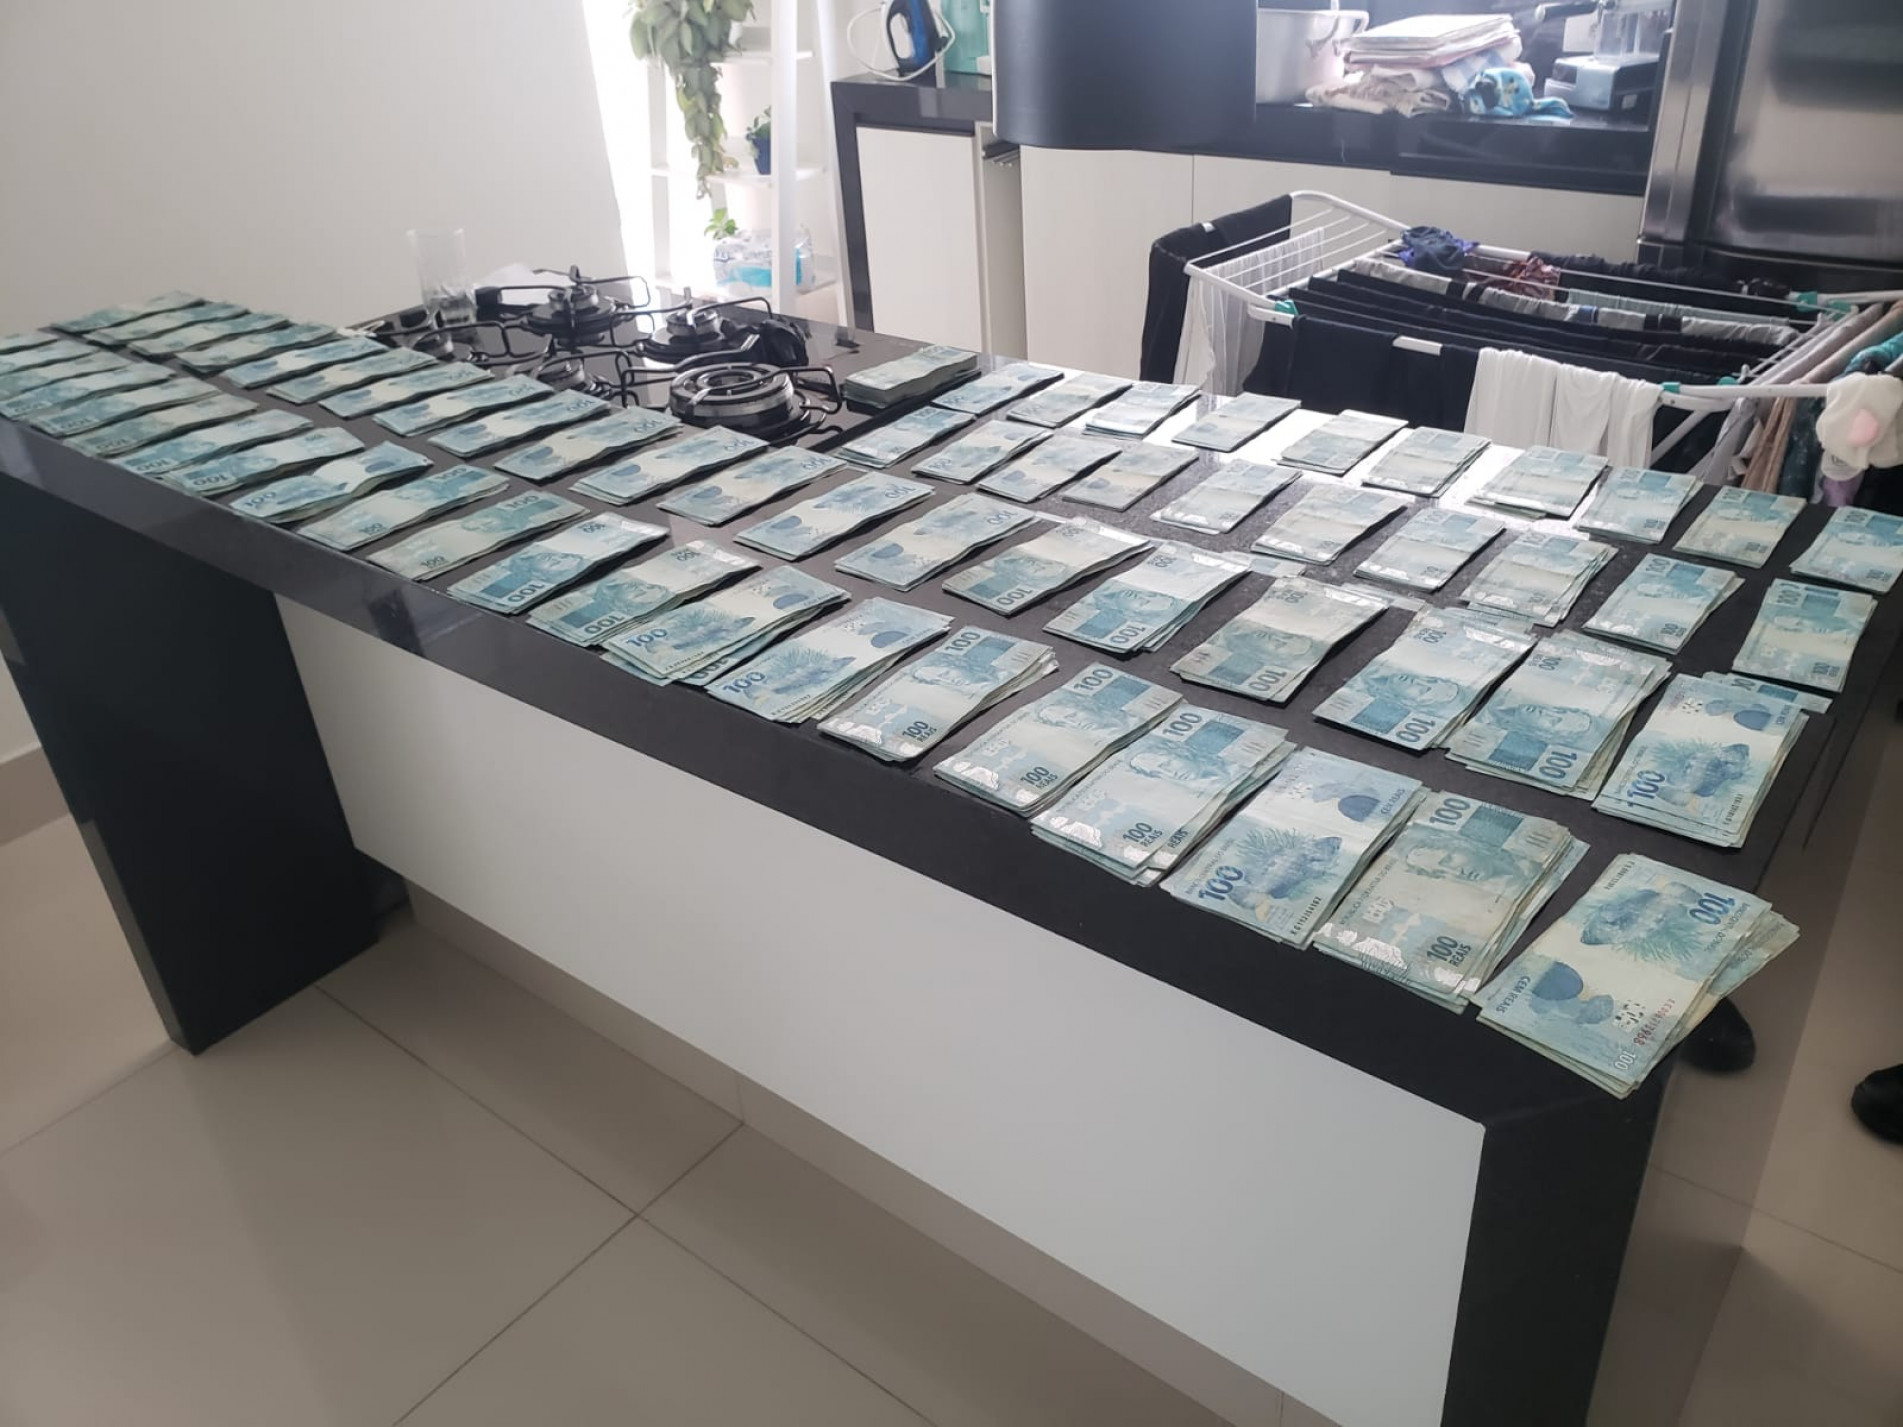 Foram encontrados 82 mil reais em espécie na casa do piloto em Sorocaba